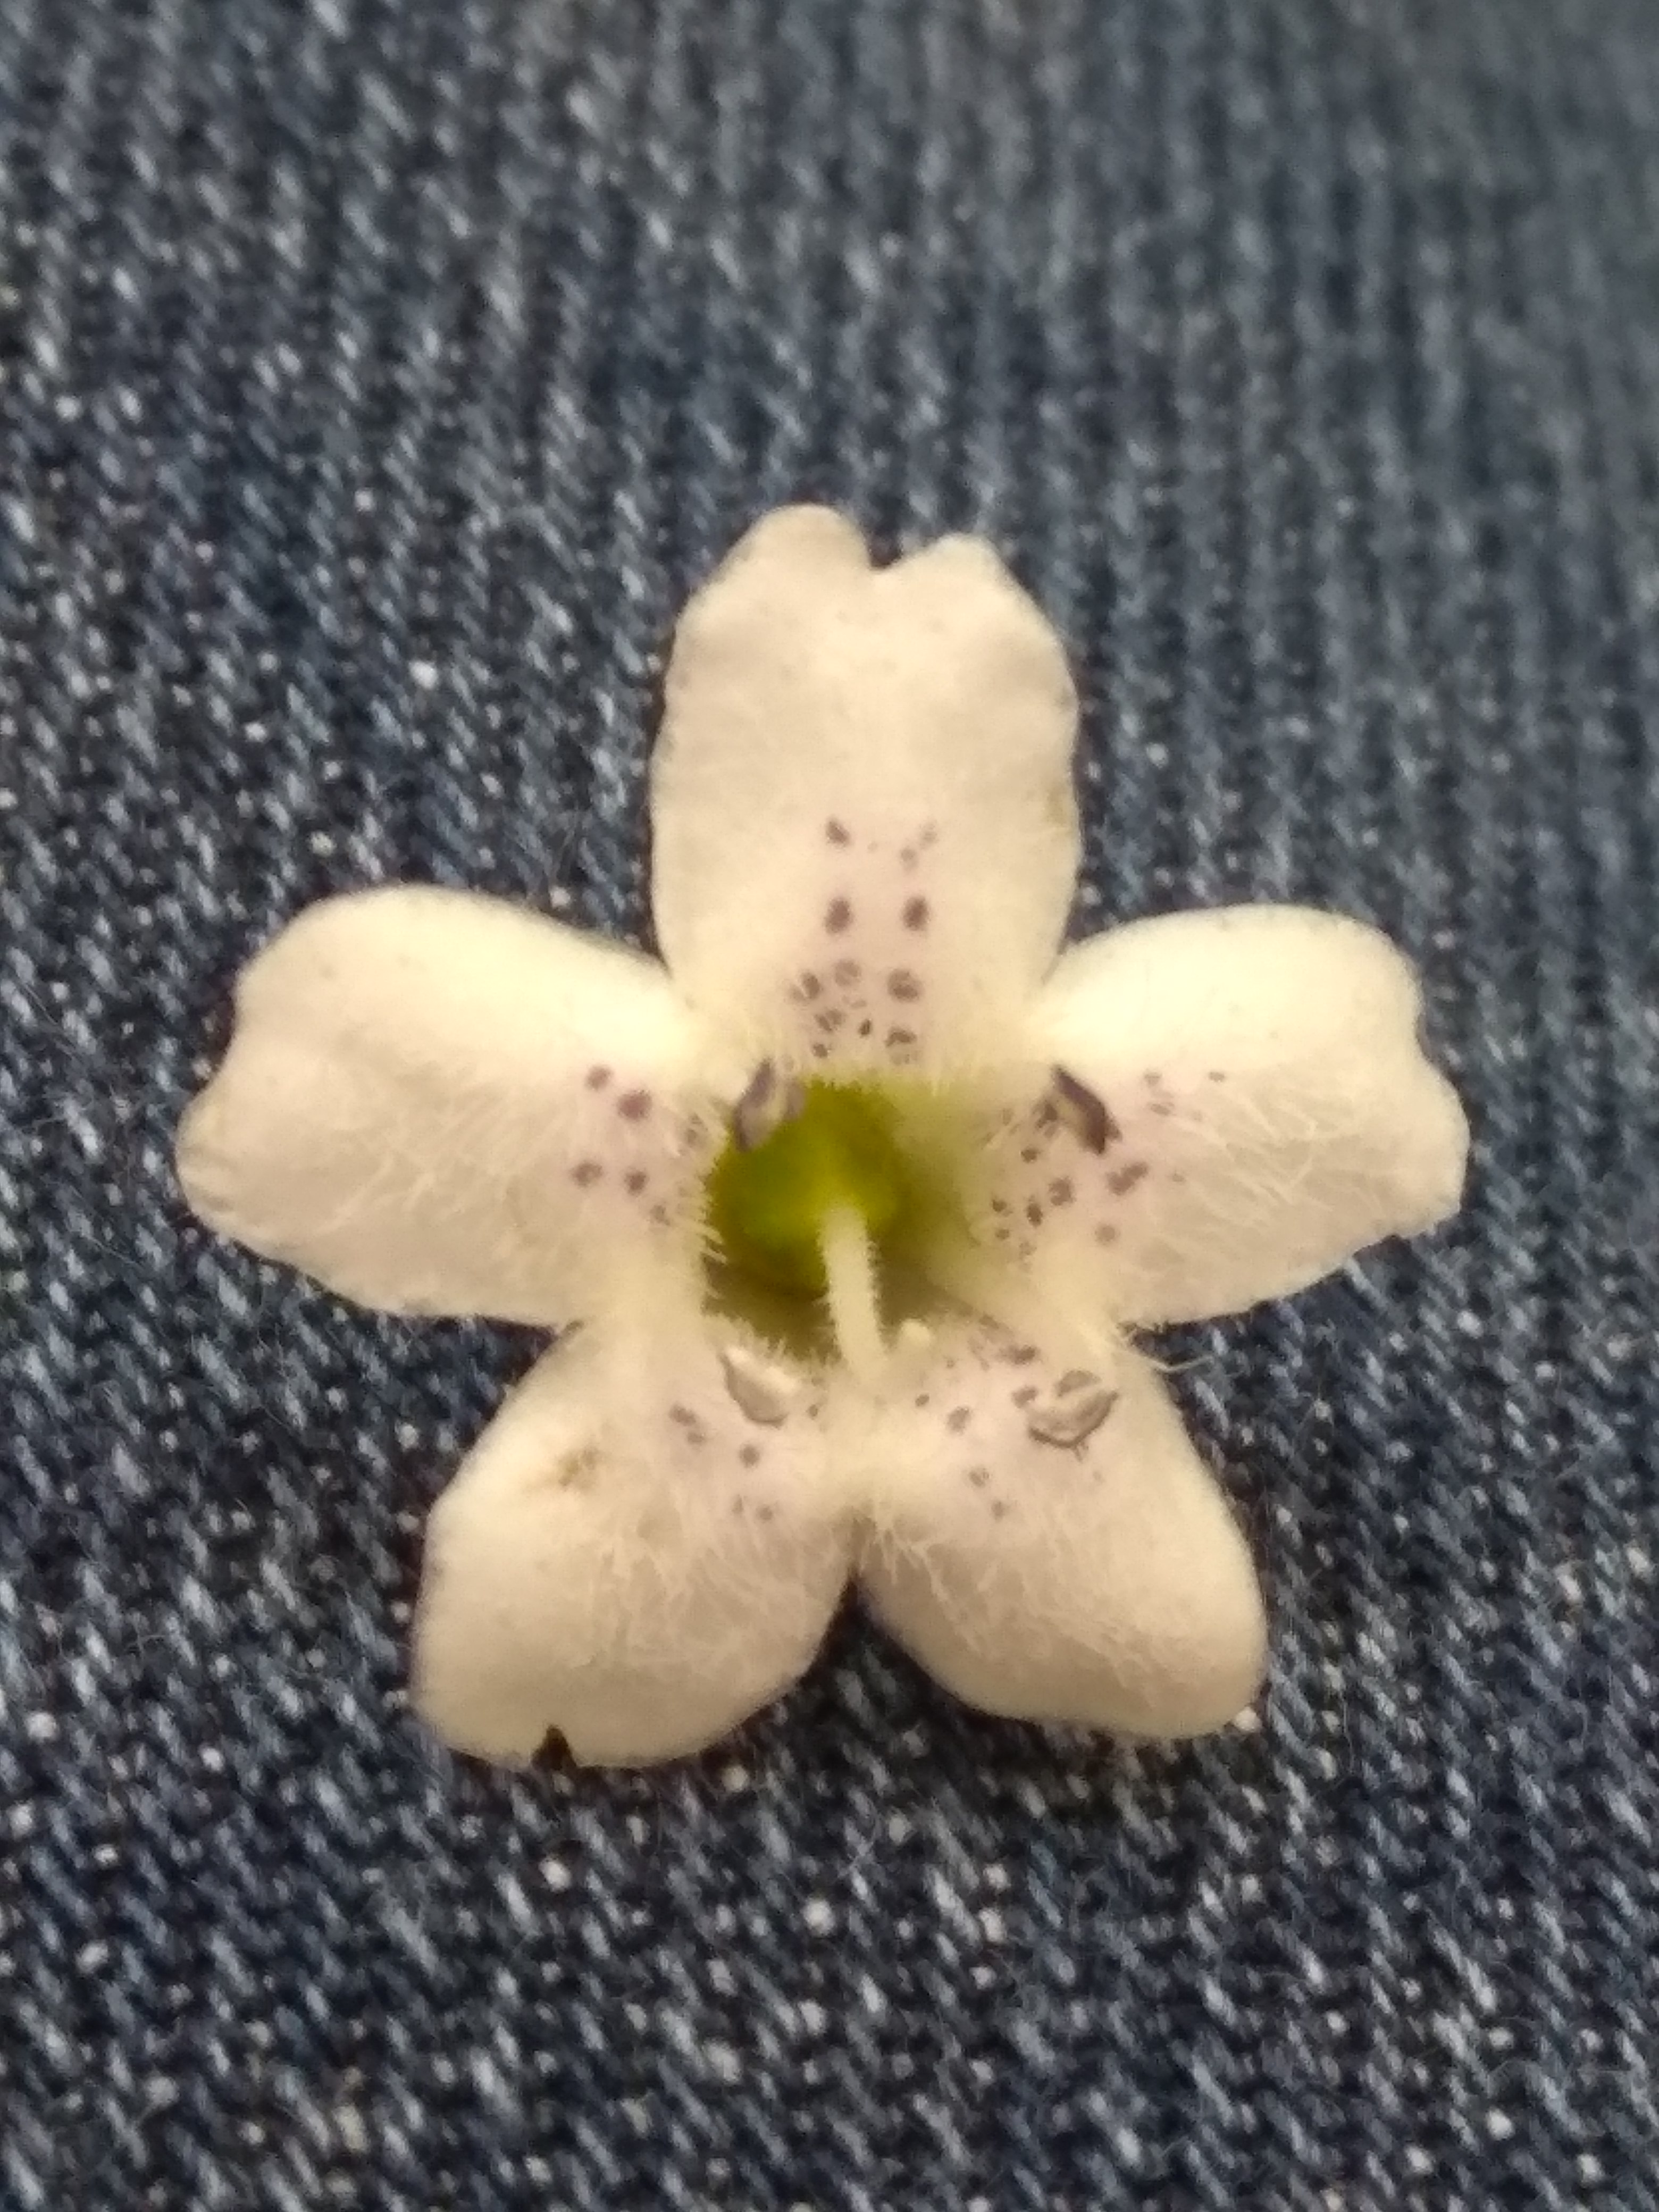 Aquesta flor és actinomorfa malgrat tingui un pètal lleugerament més gran i amb unes marques més pronunciades en aquest pètal? 